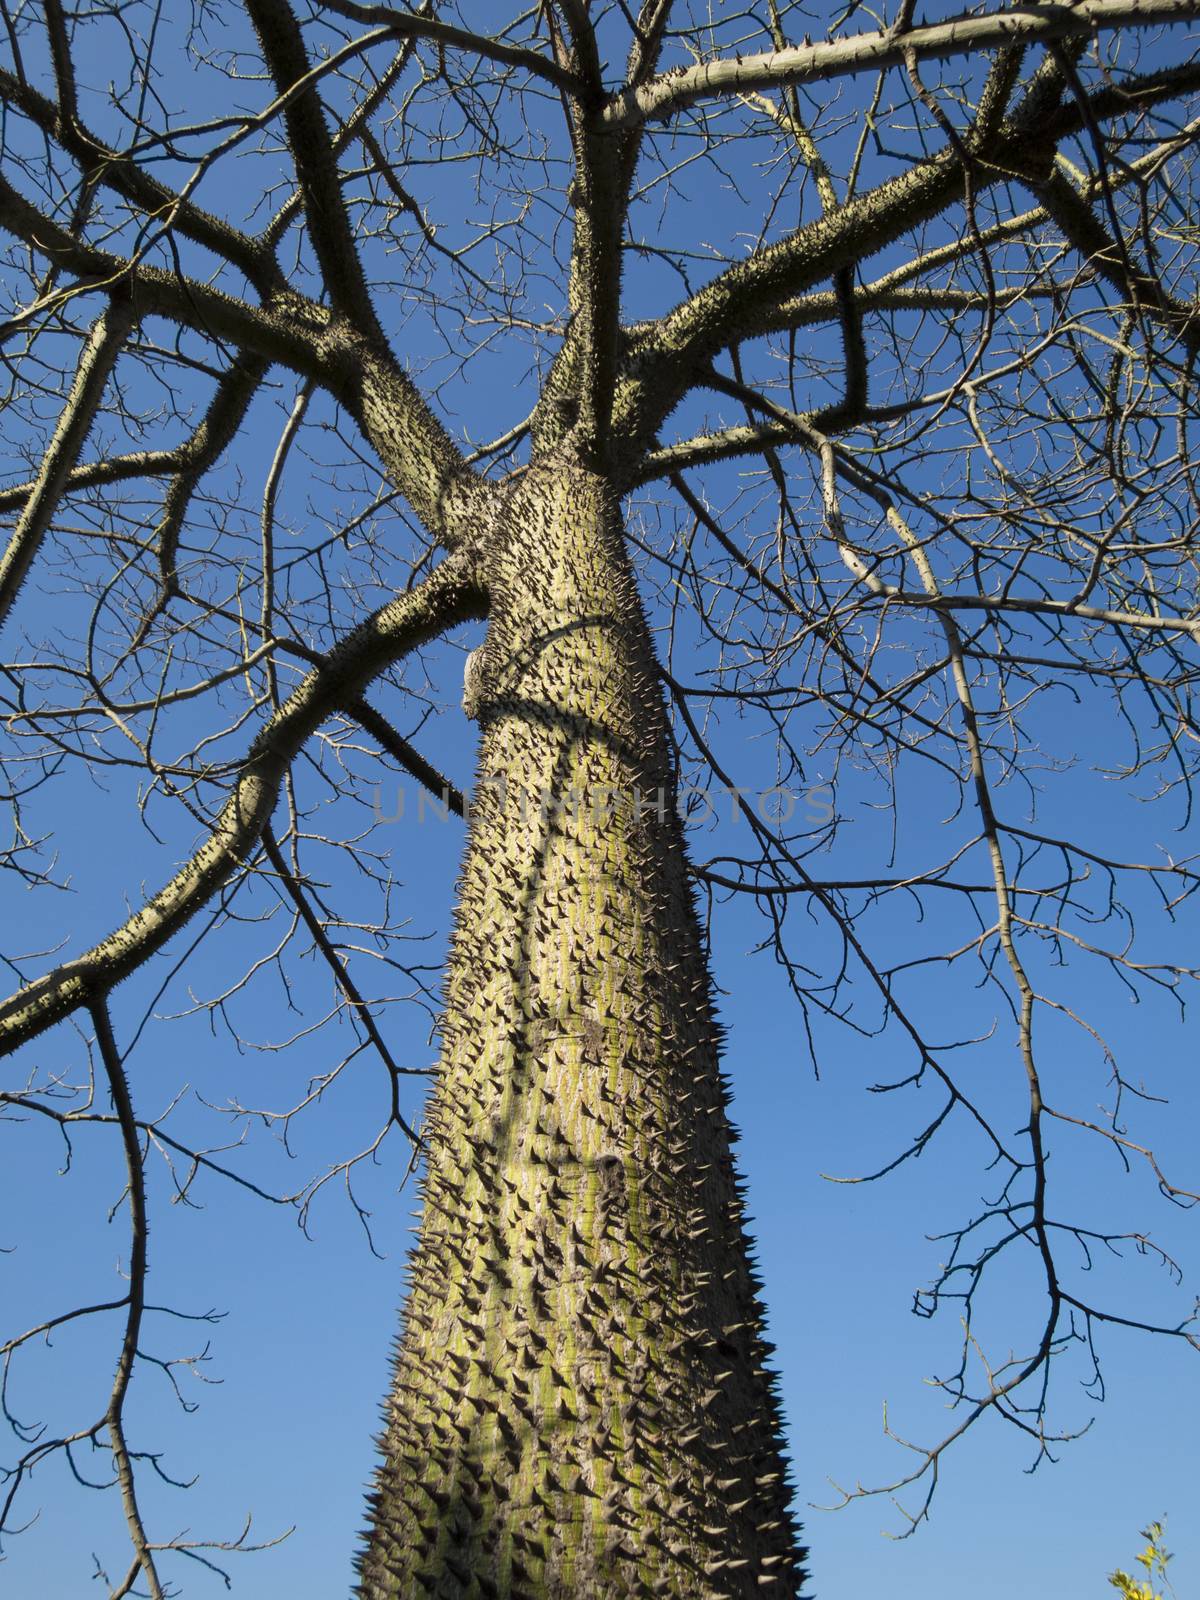 Chorisia tree trunk by quintanilla